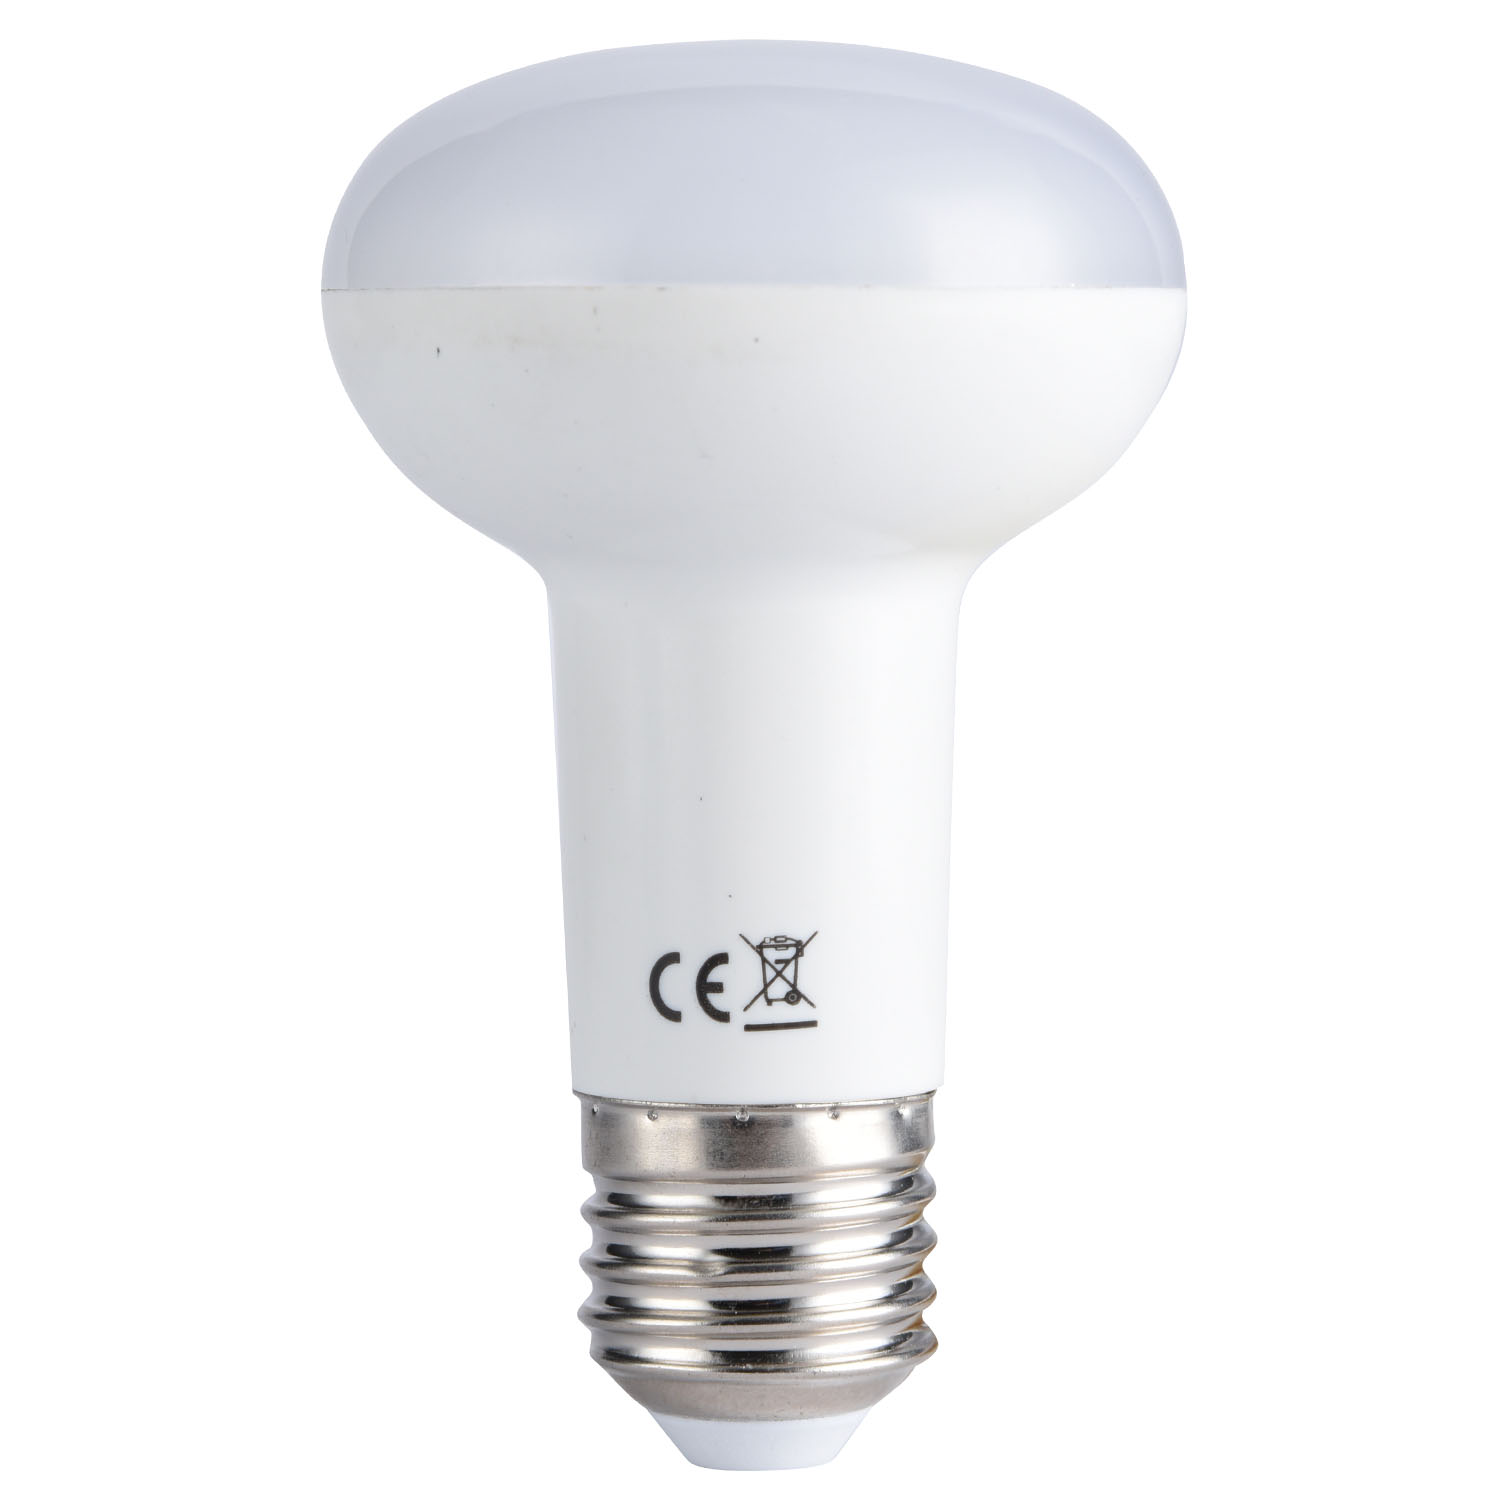  R Light E27 LED Bulb